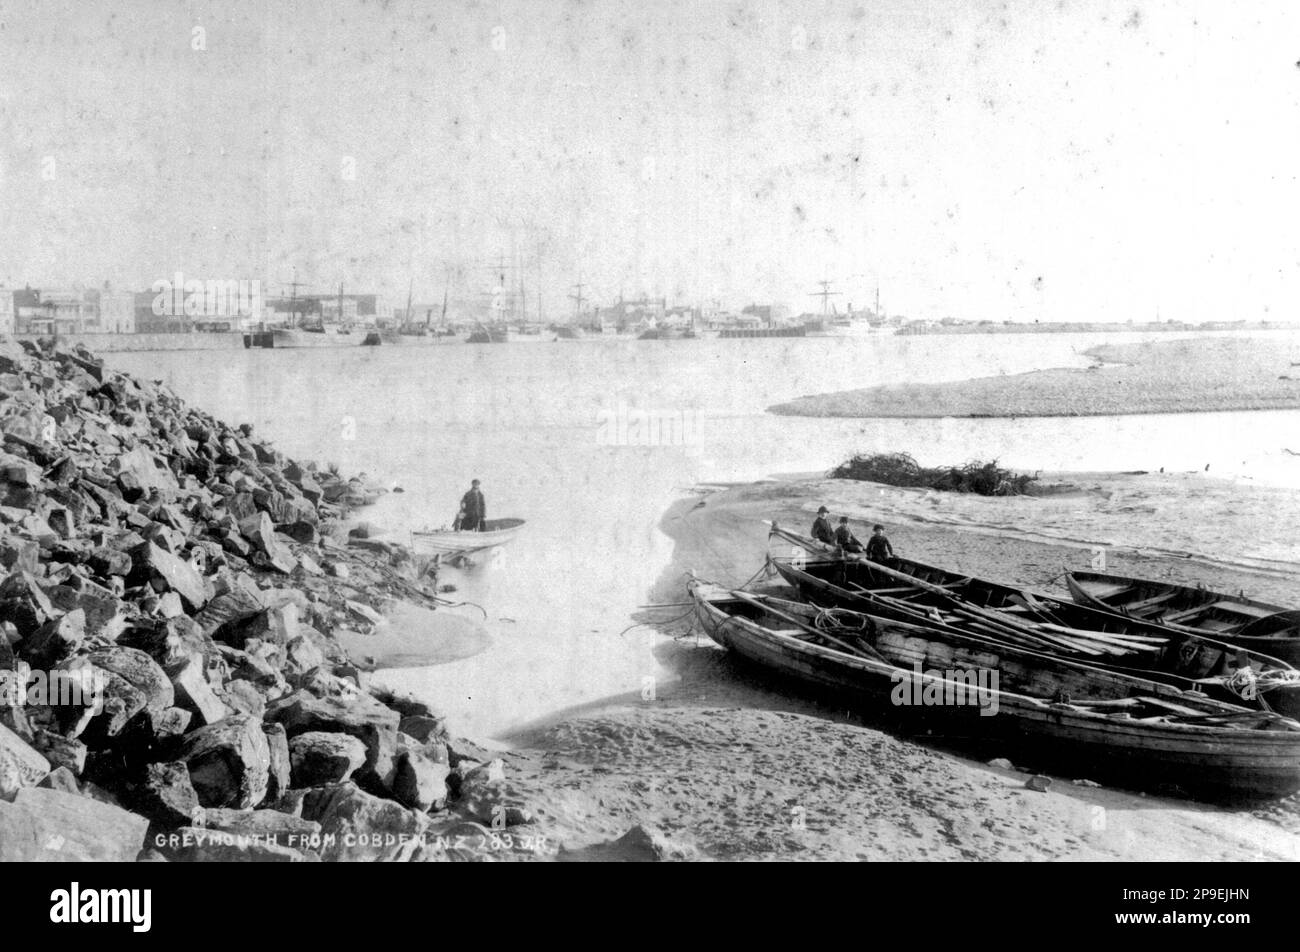 Greymouth von Cobden Seite des Grey River, Westland, Neuseeland gesehen, vermutlich in den 1870er Jahren. Walfang Boote im Vordergrund. Stockfoto